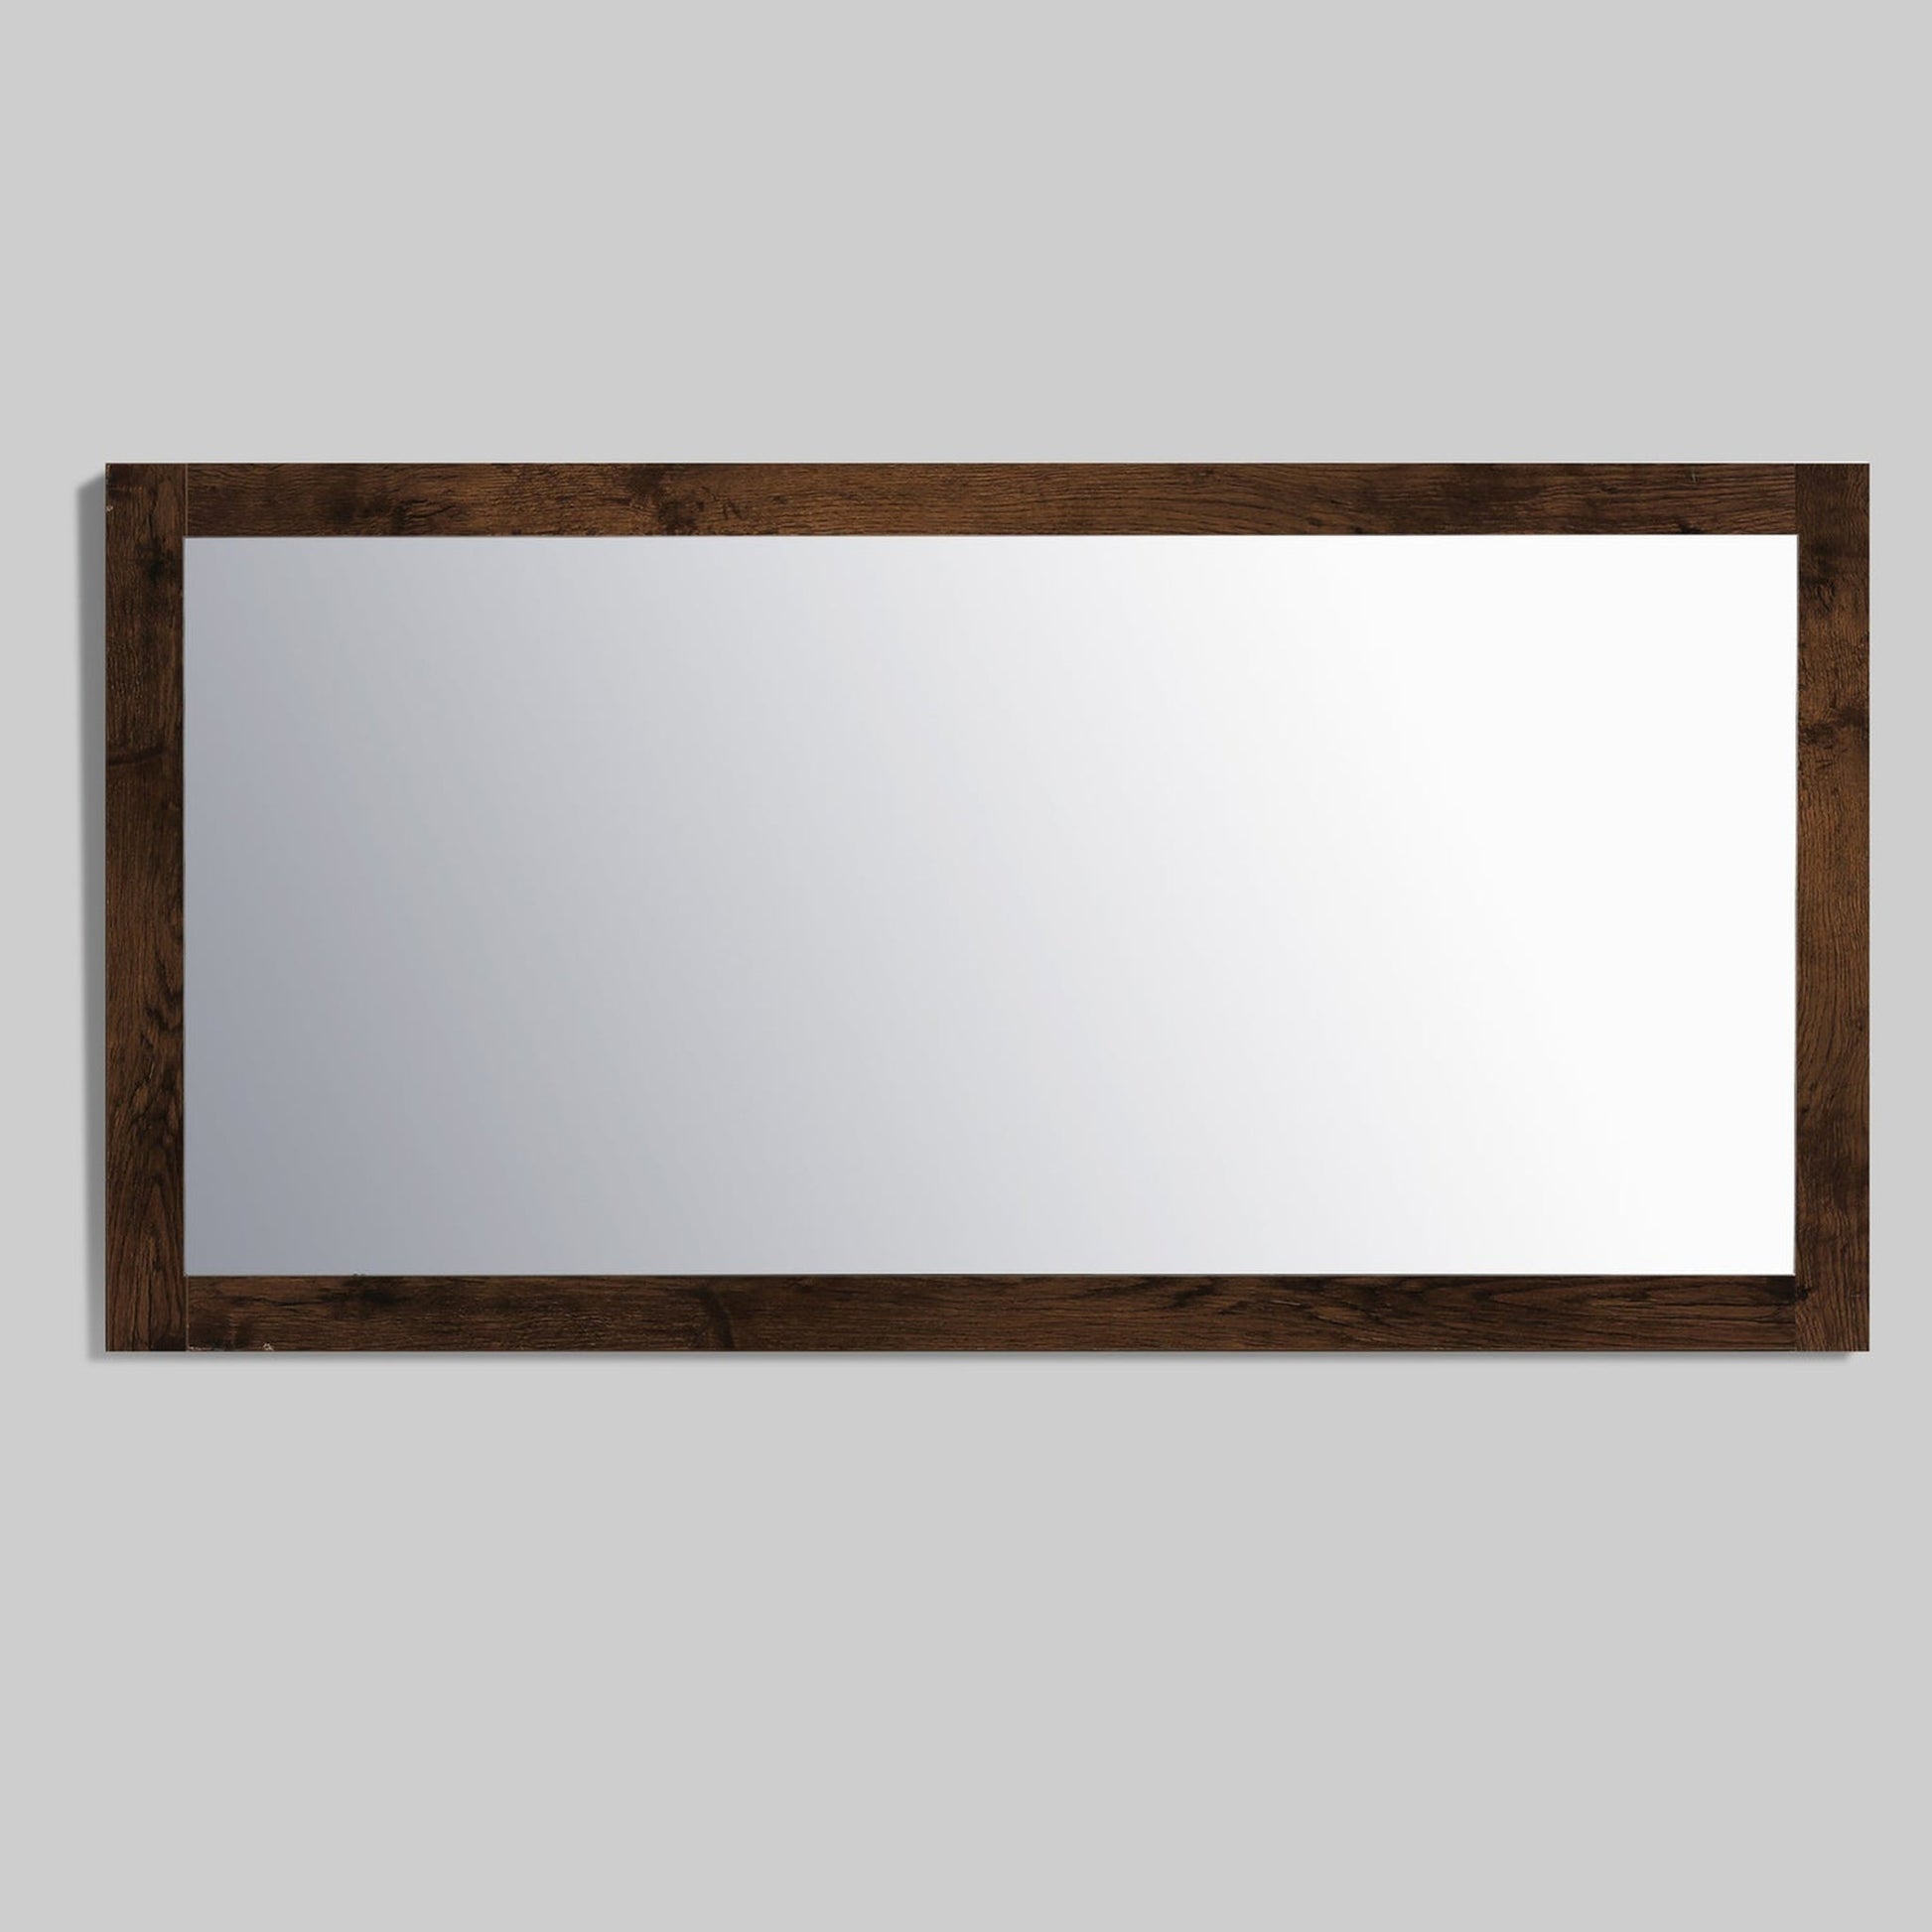 Eviva Sun 60" x 30" Rosewood Framed Bathroom Wall-Mounted Mirror